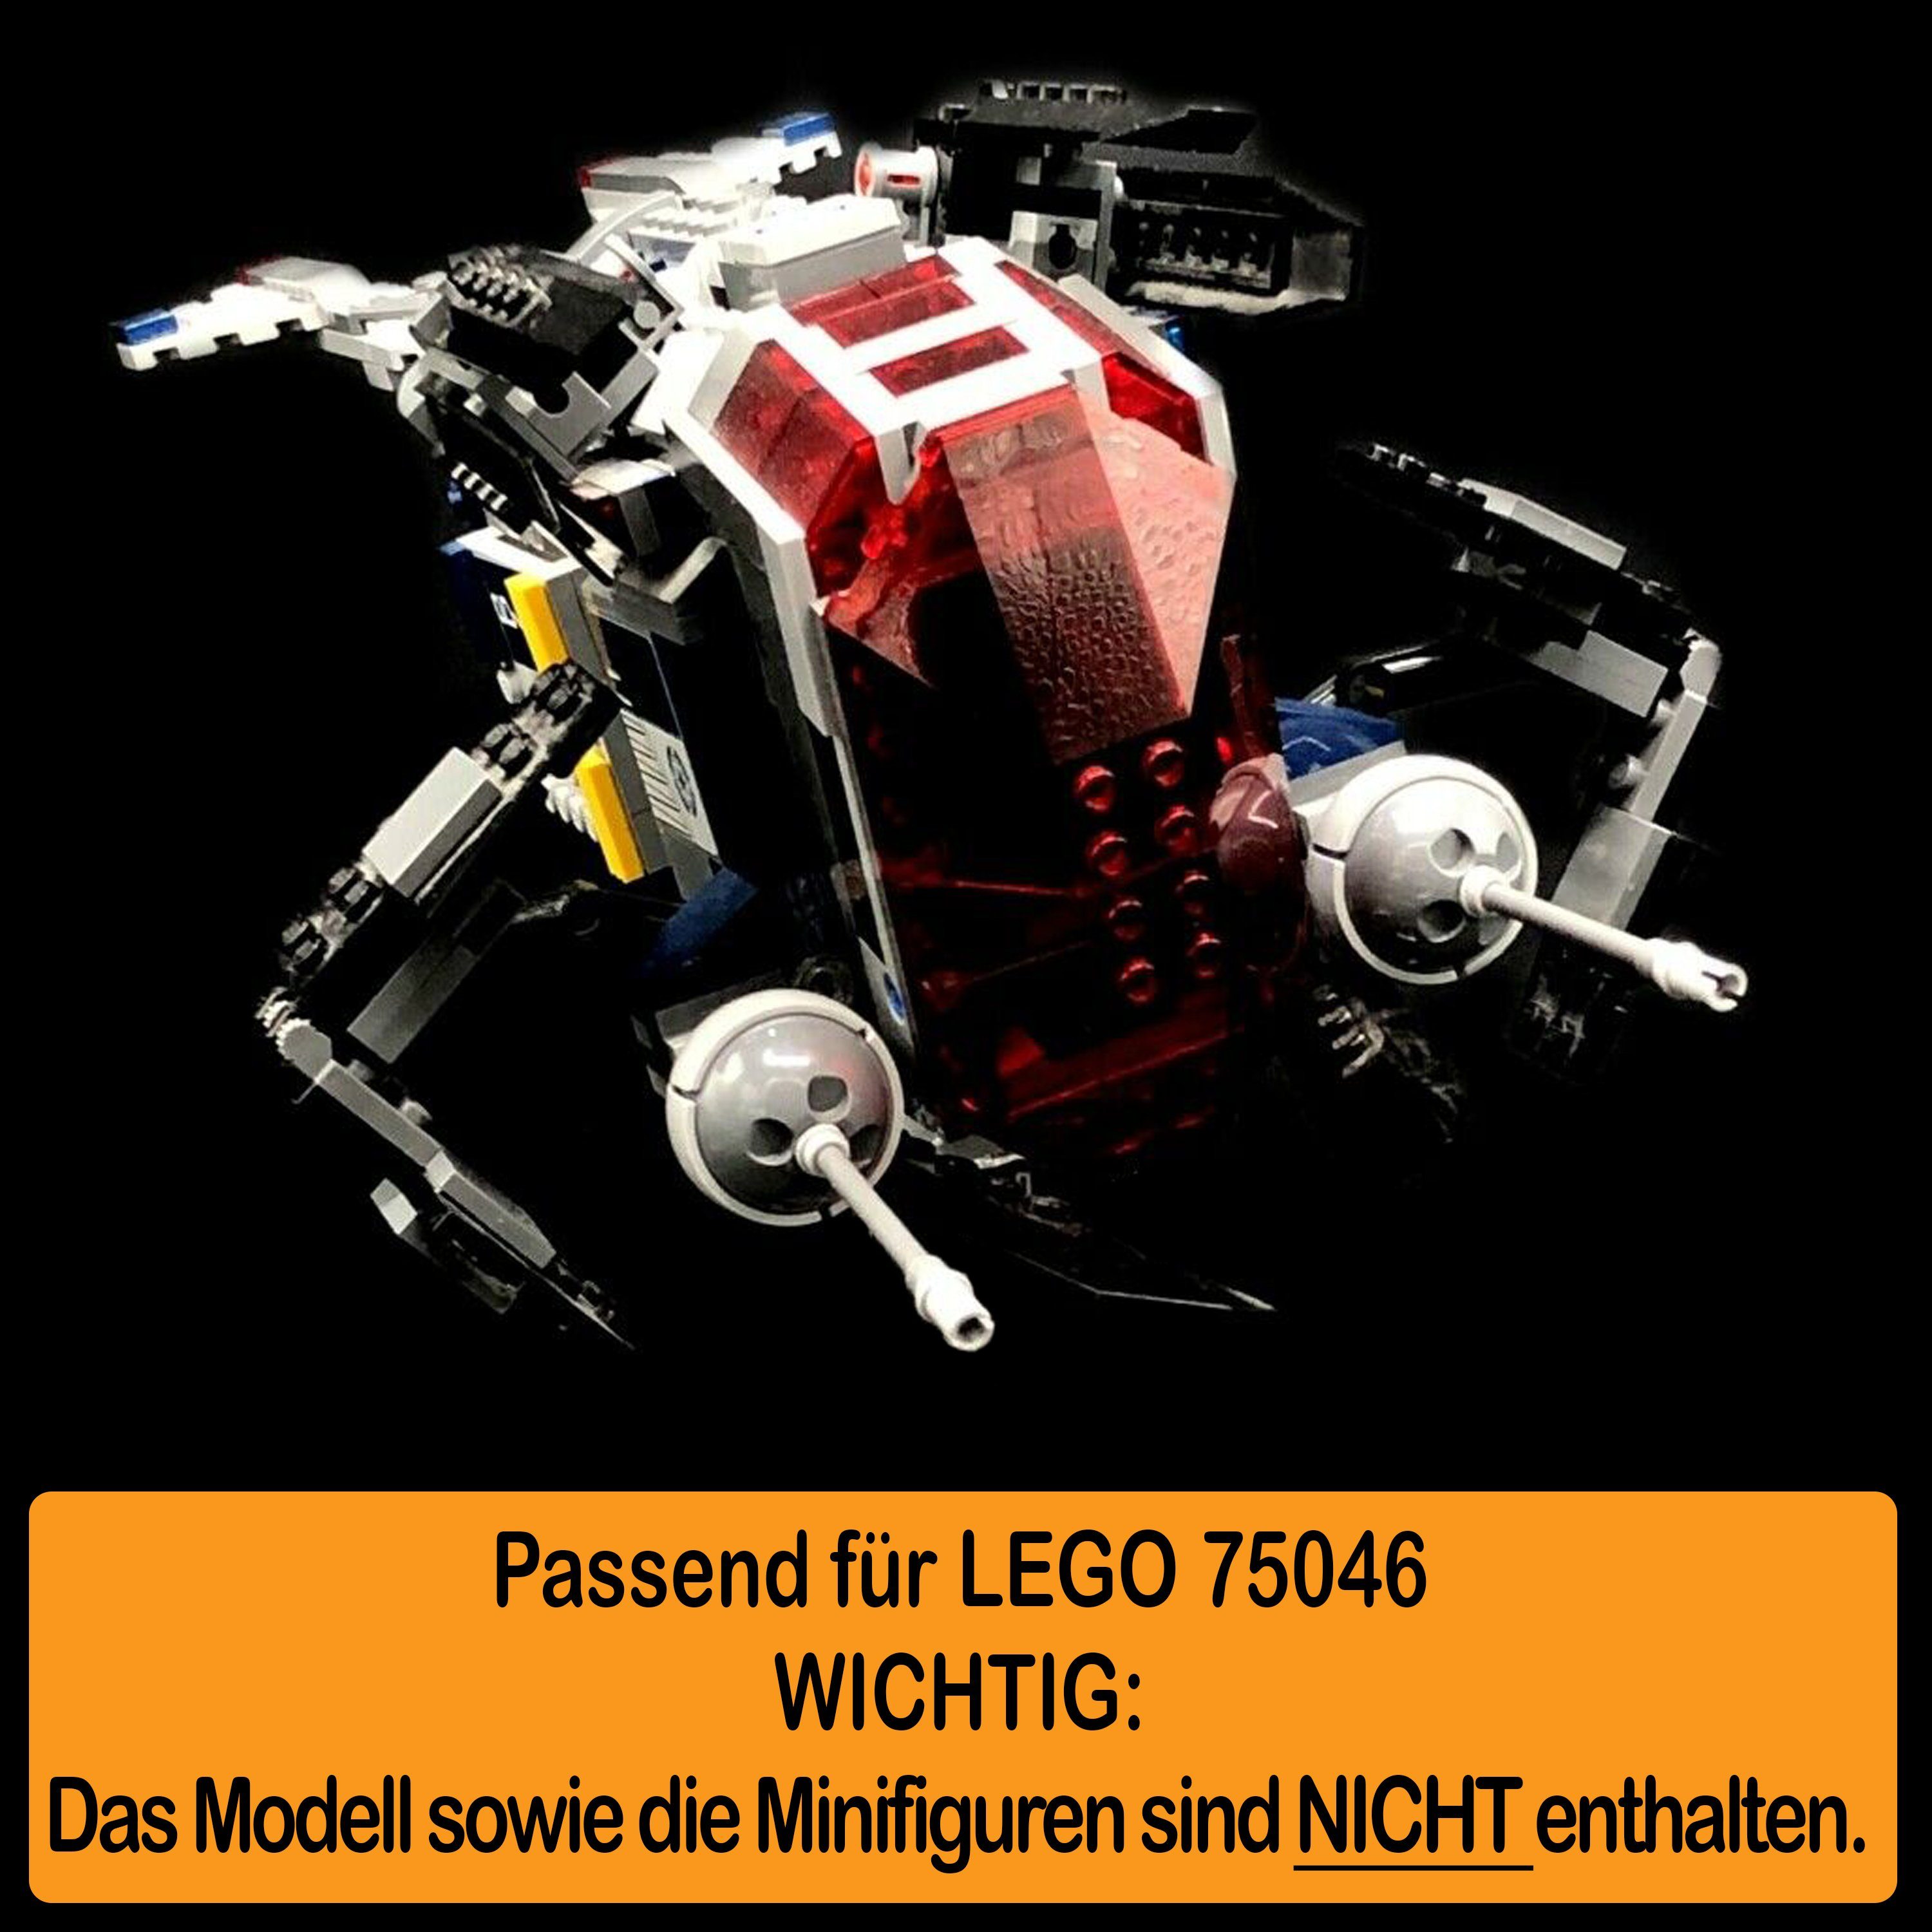 Gunship Standfuß Germany und einstellbar, Made Police Stand 100% für Display LEGO Winkel selbst Acryl zum (verschiedene Positionen Coruscant 75046 zusammenbauen), in AREA17